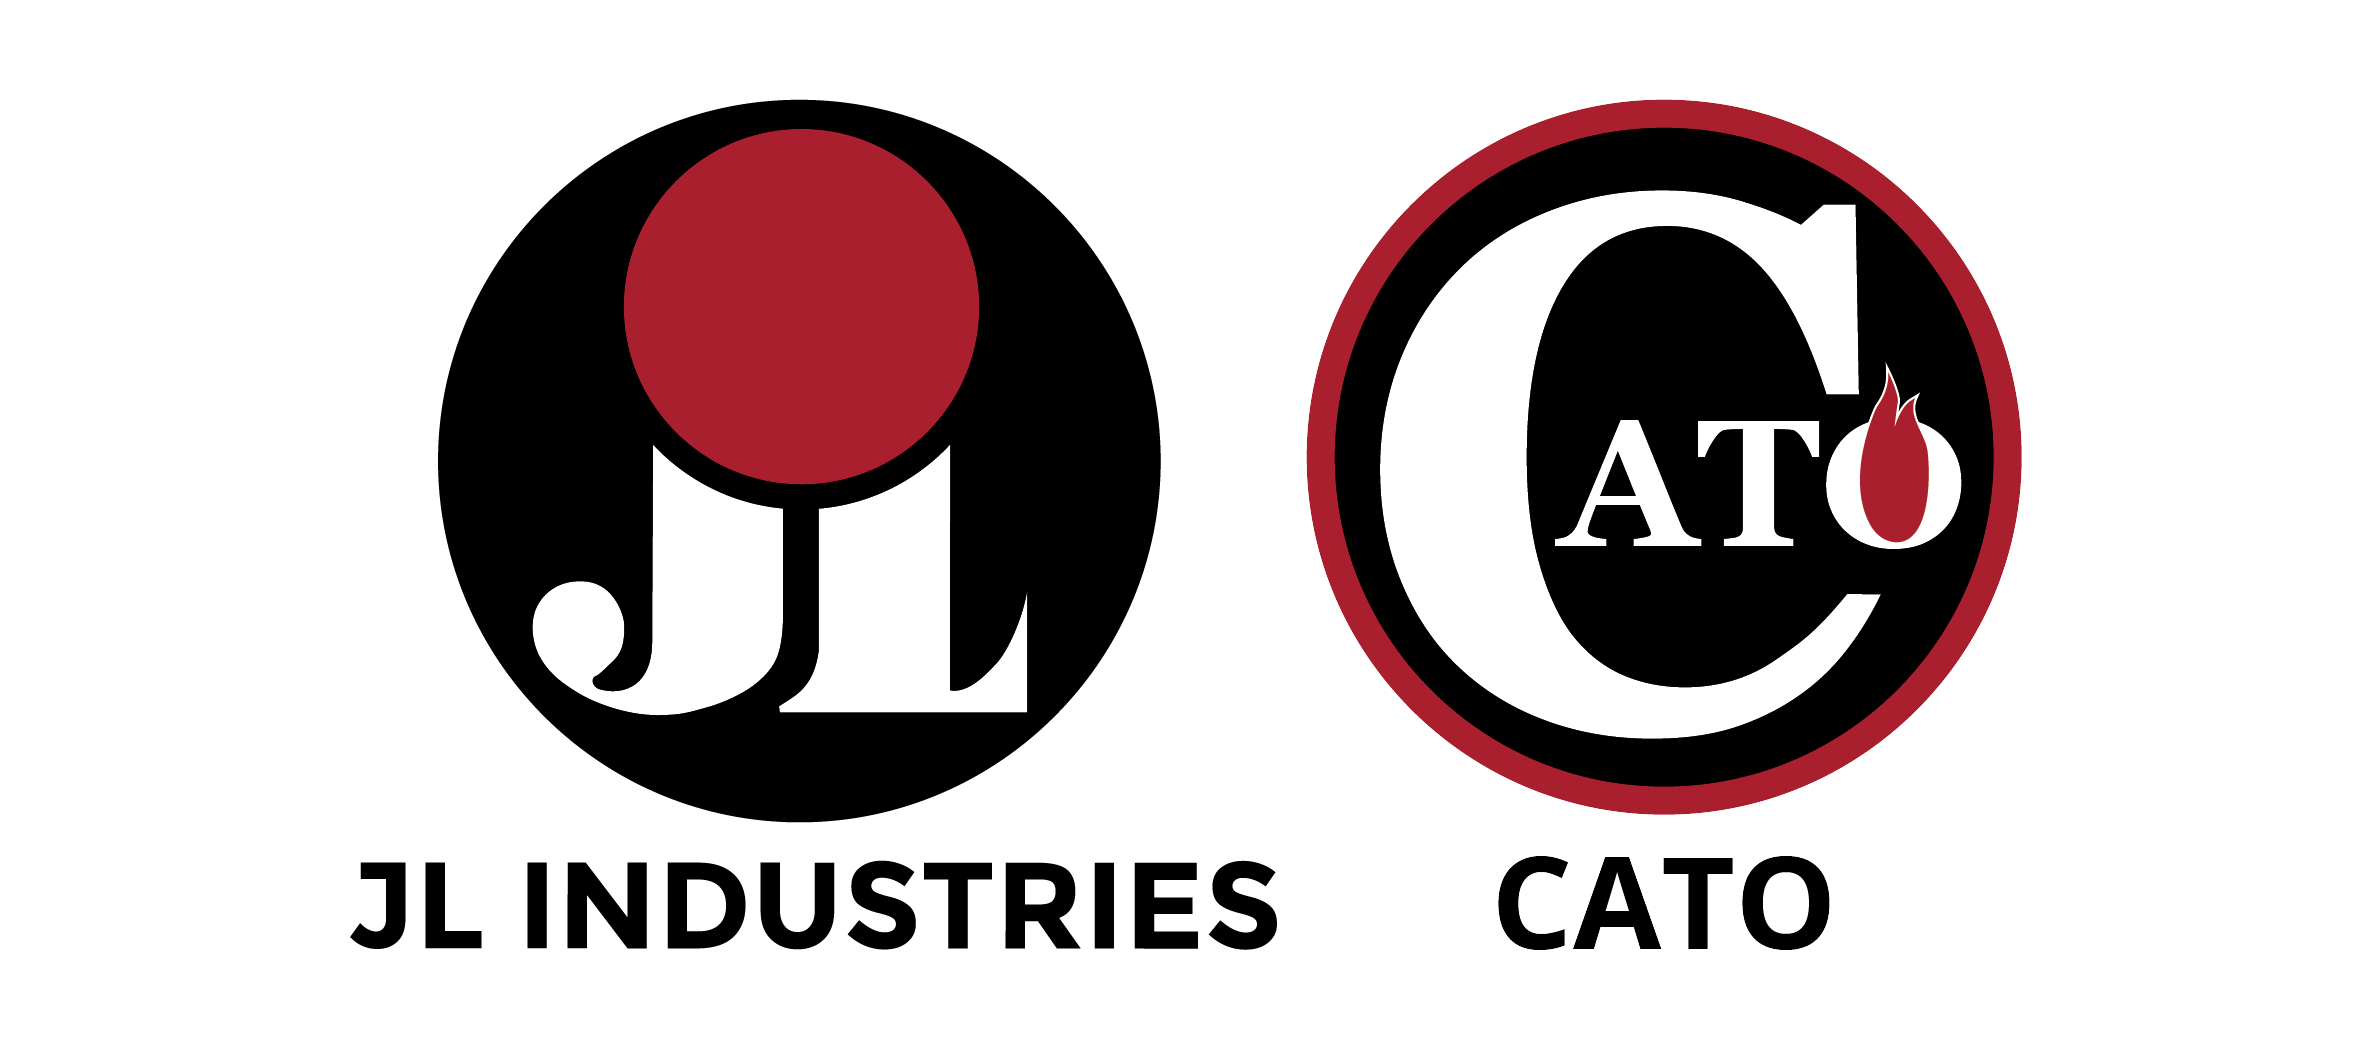 JL Cato logo